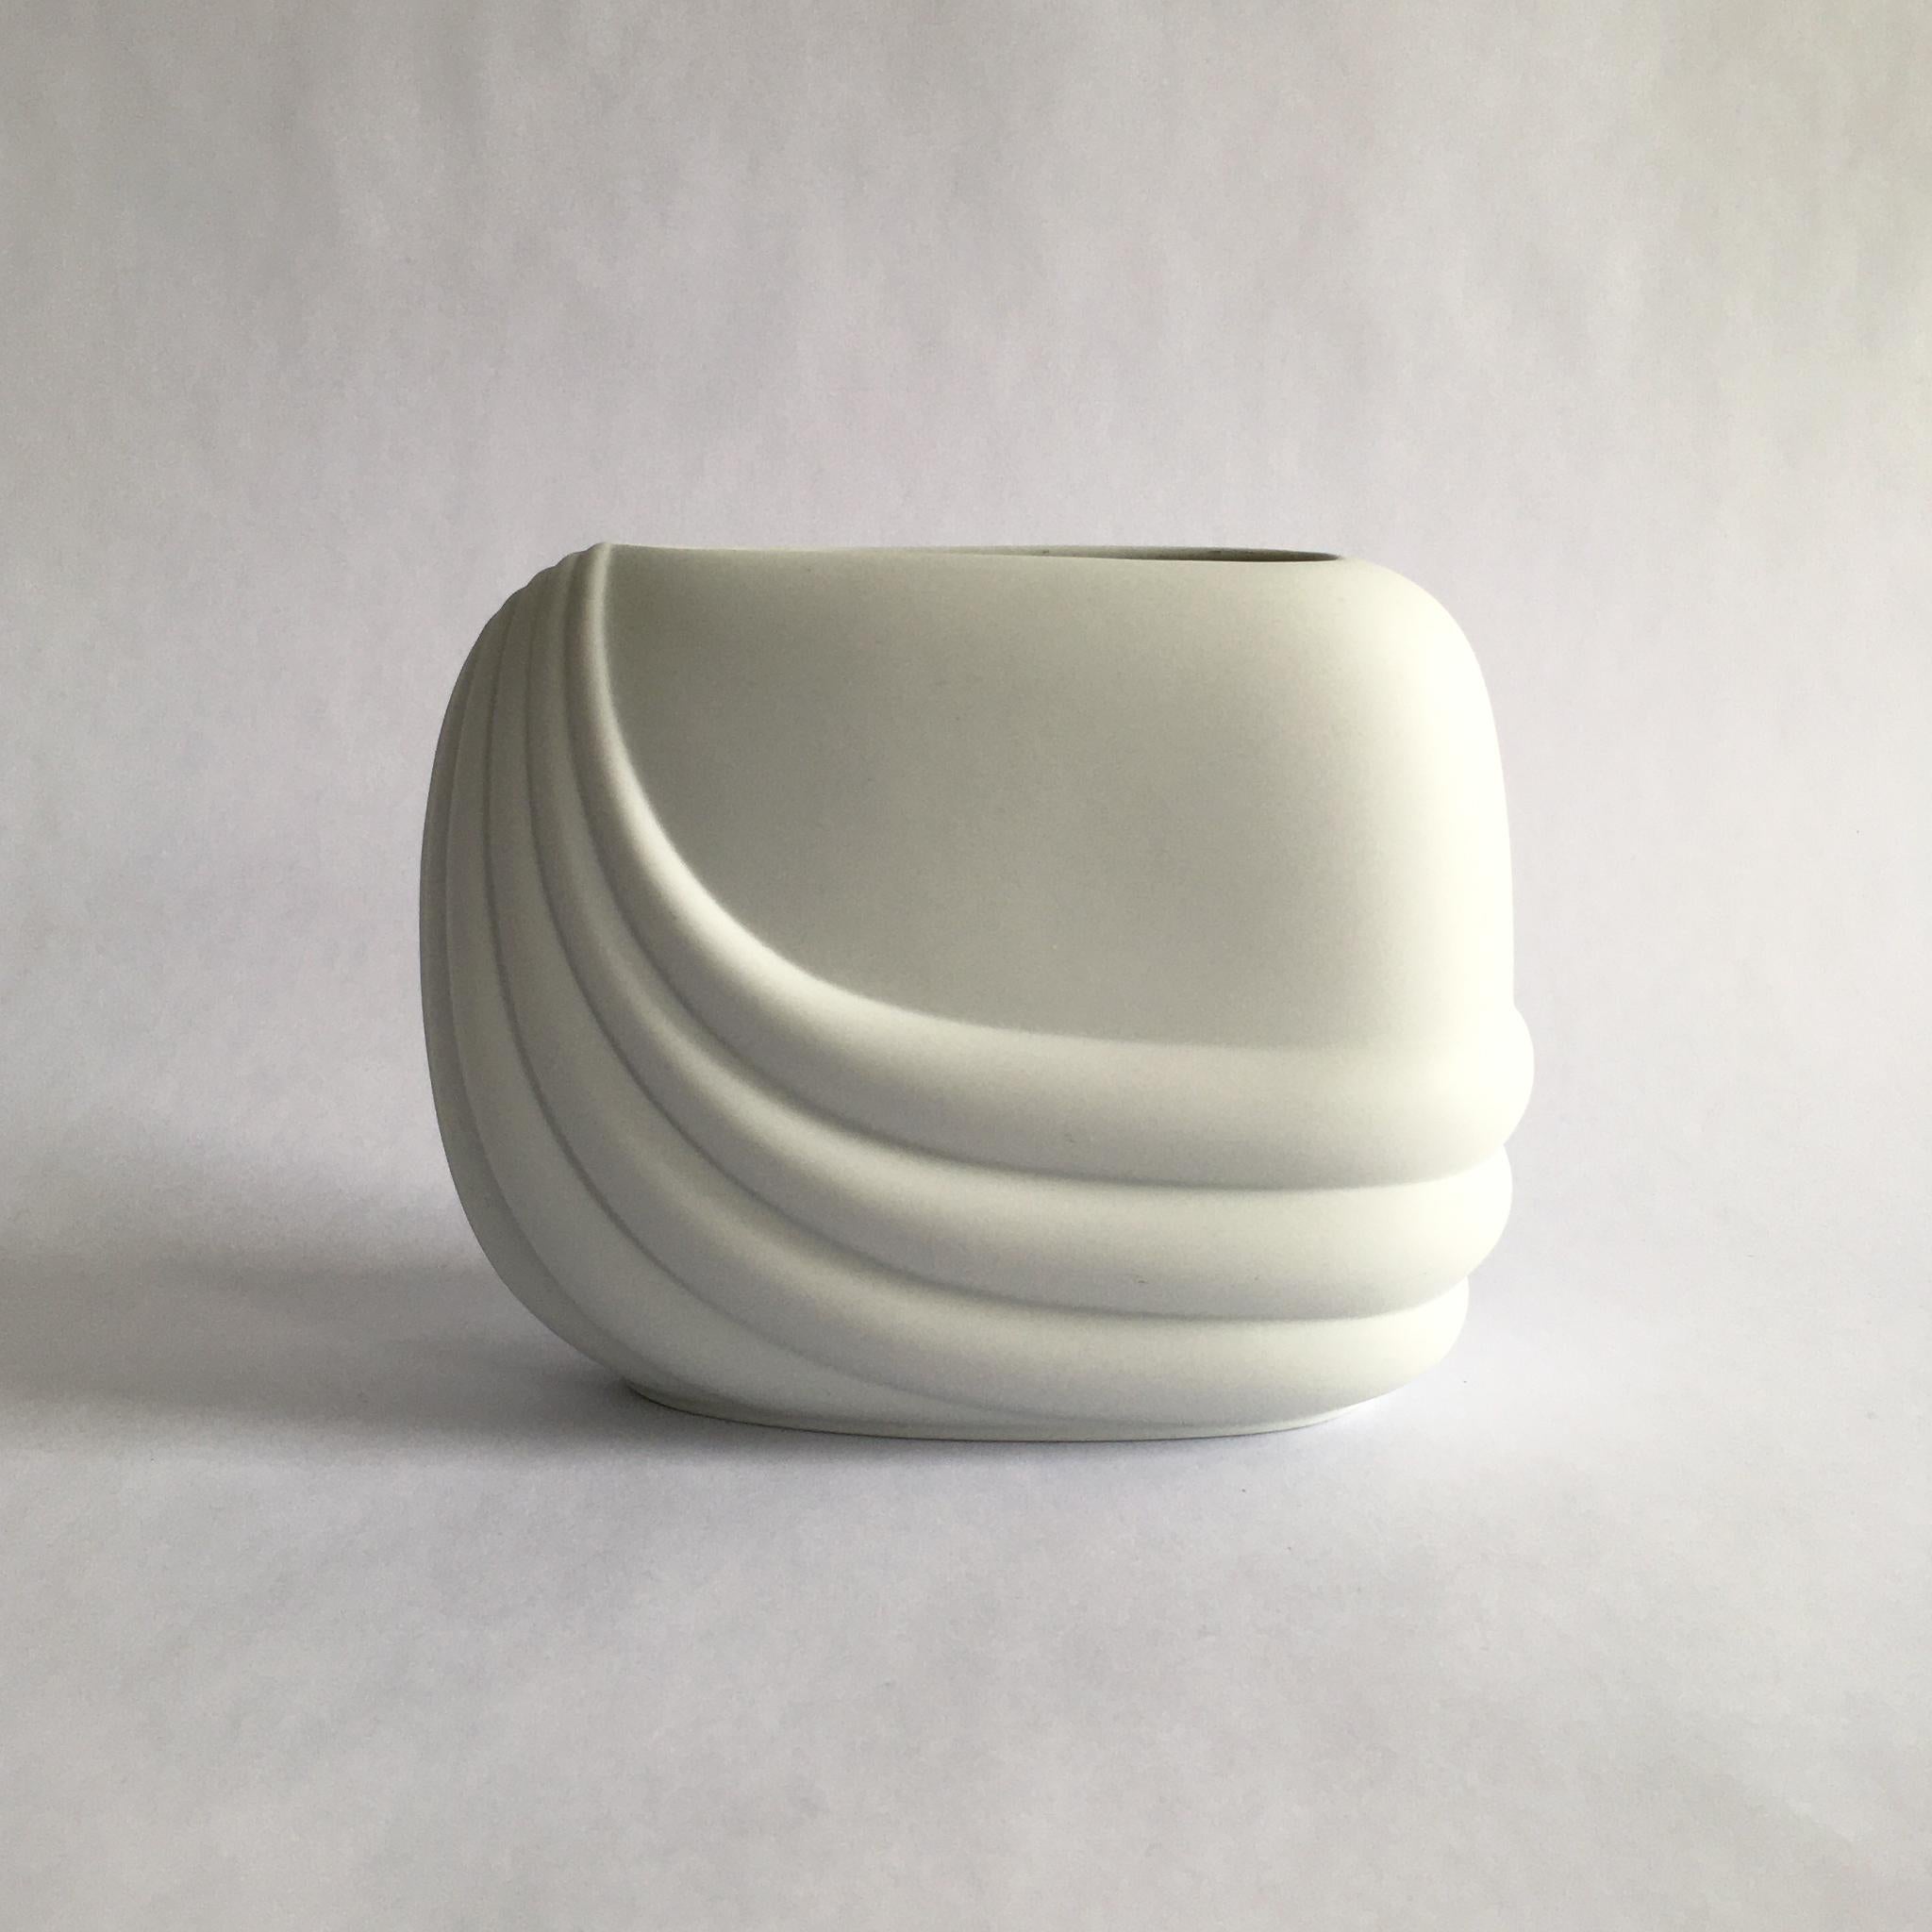 Vase en biscuit de porcelaine blanche Rosenthal Studio line par Uta Feyl, vers les années 1980. Superbe forme géométrique incurvée.

Mesures :
H 5